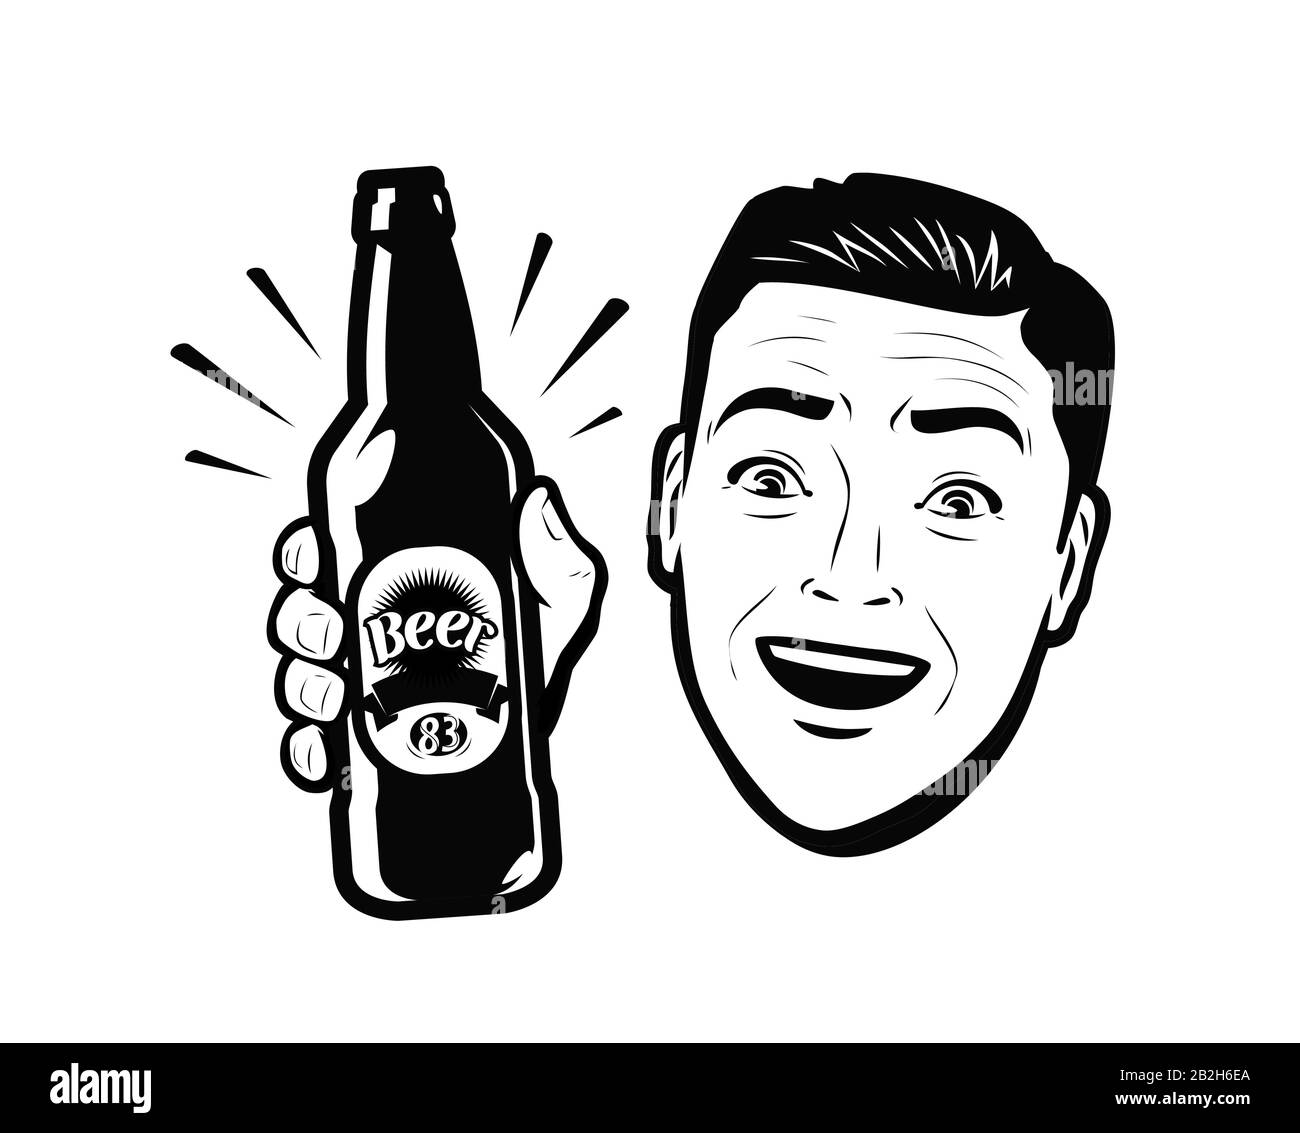 Mann mit einer Flasche Bier. Retro Comic Pop Art Vektor Illustration Stock Vektor